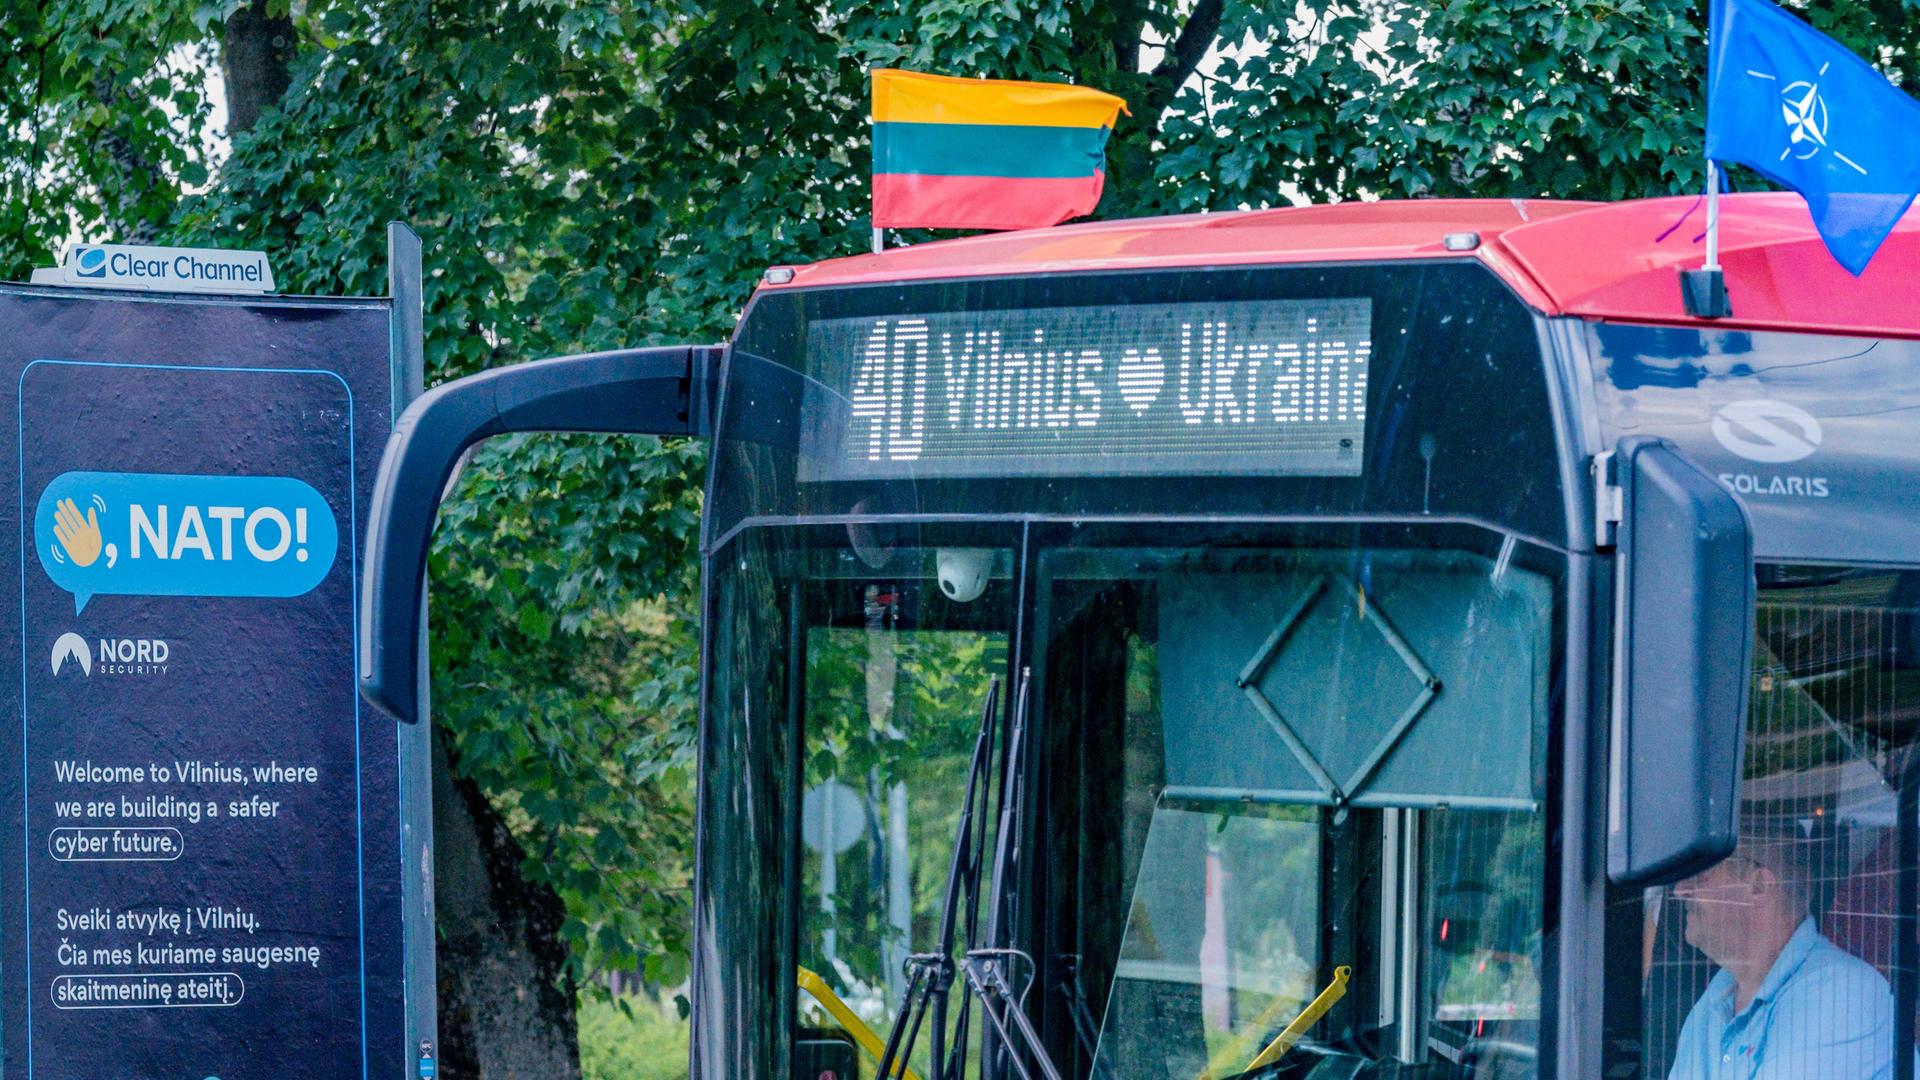 Vorbereitungen des NATO-Gipfels in den Straßen von Vilnius. Zu sehen ist ein Bus mit den Flaggen der Nato und Litauens. Auf der Anzeige des Busses steht "Vilnius loves Ukraine". 